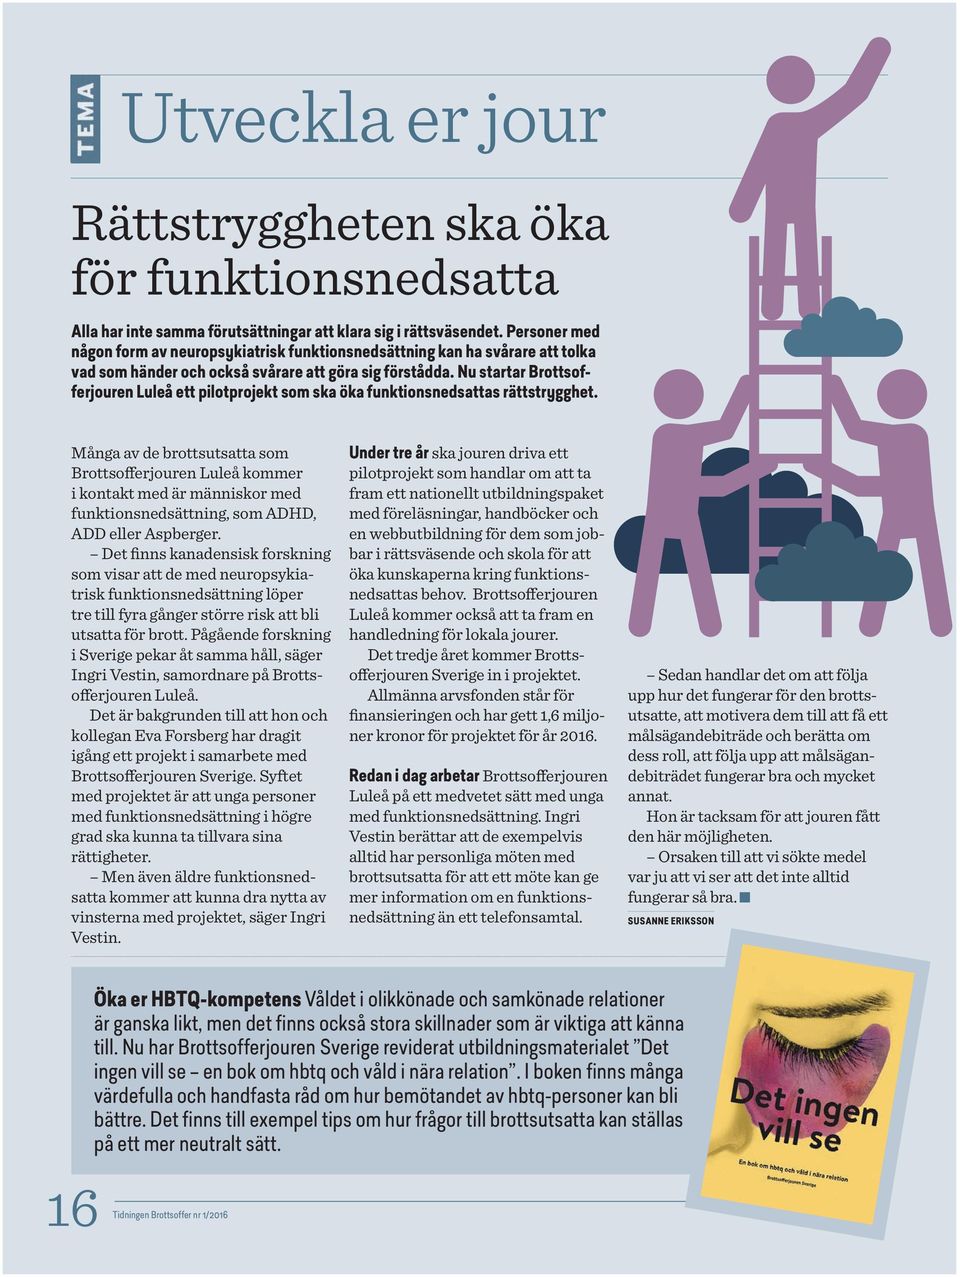 Nu startar Brottsofferjouren Luleå ett pilotprojekt som ska öka funktionsnedsattas rättstrygghet.